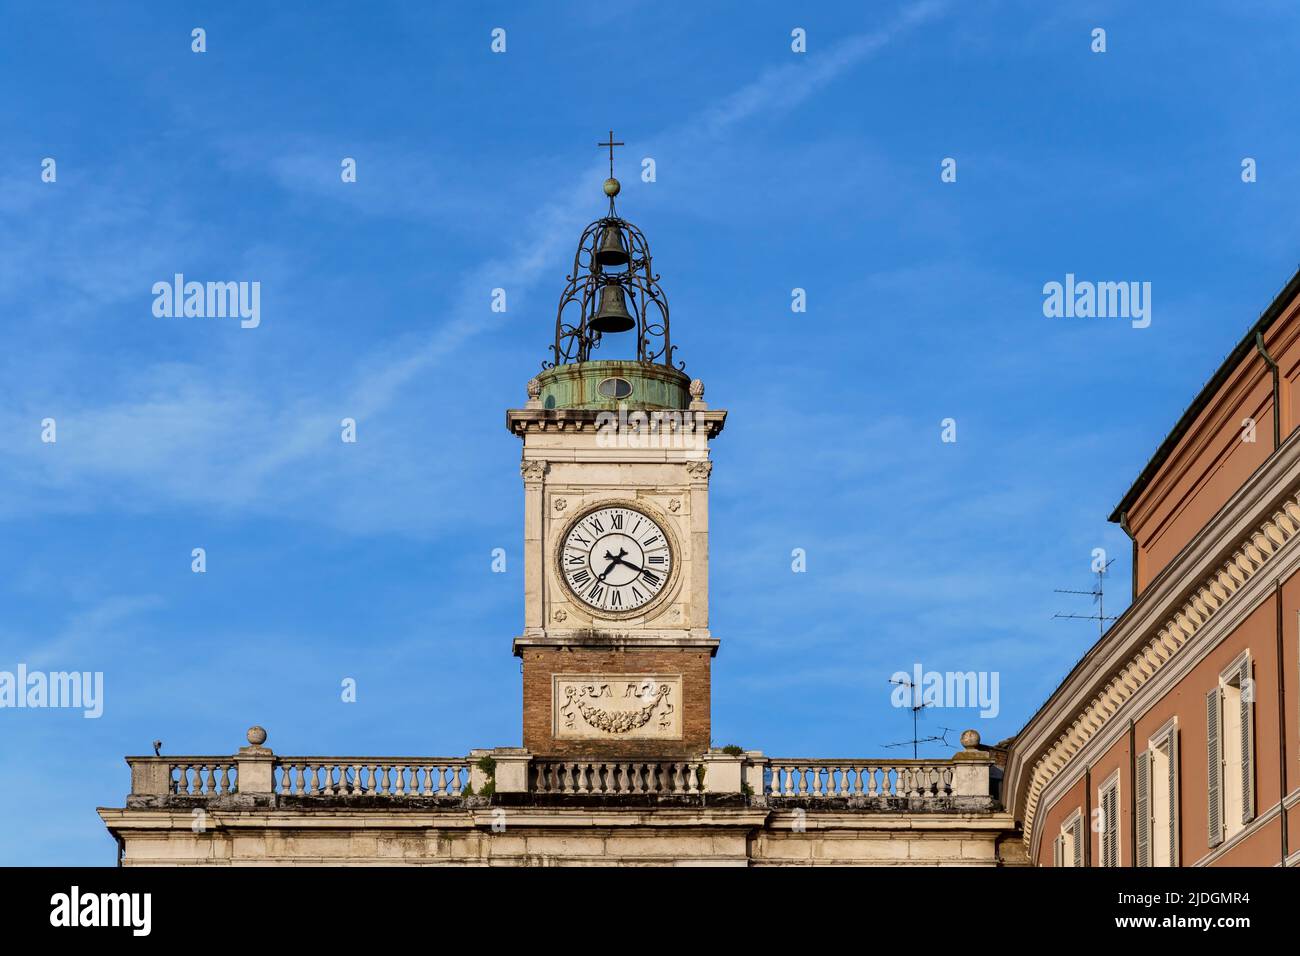 Antica torre campanaria in Piazza del Popolo. Ravenna, Emilia Romagna, Italia, Europa, Unione europea, UE. Cielo blu, spazio di copia. Foto Stock